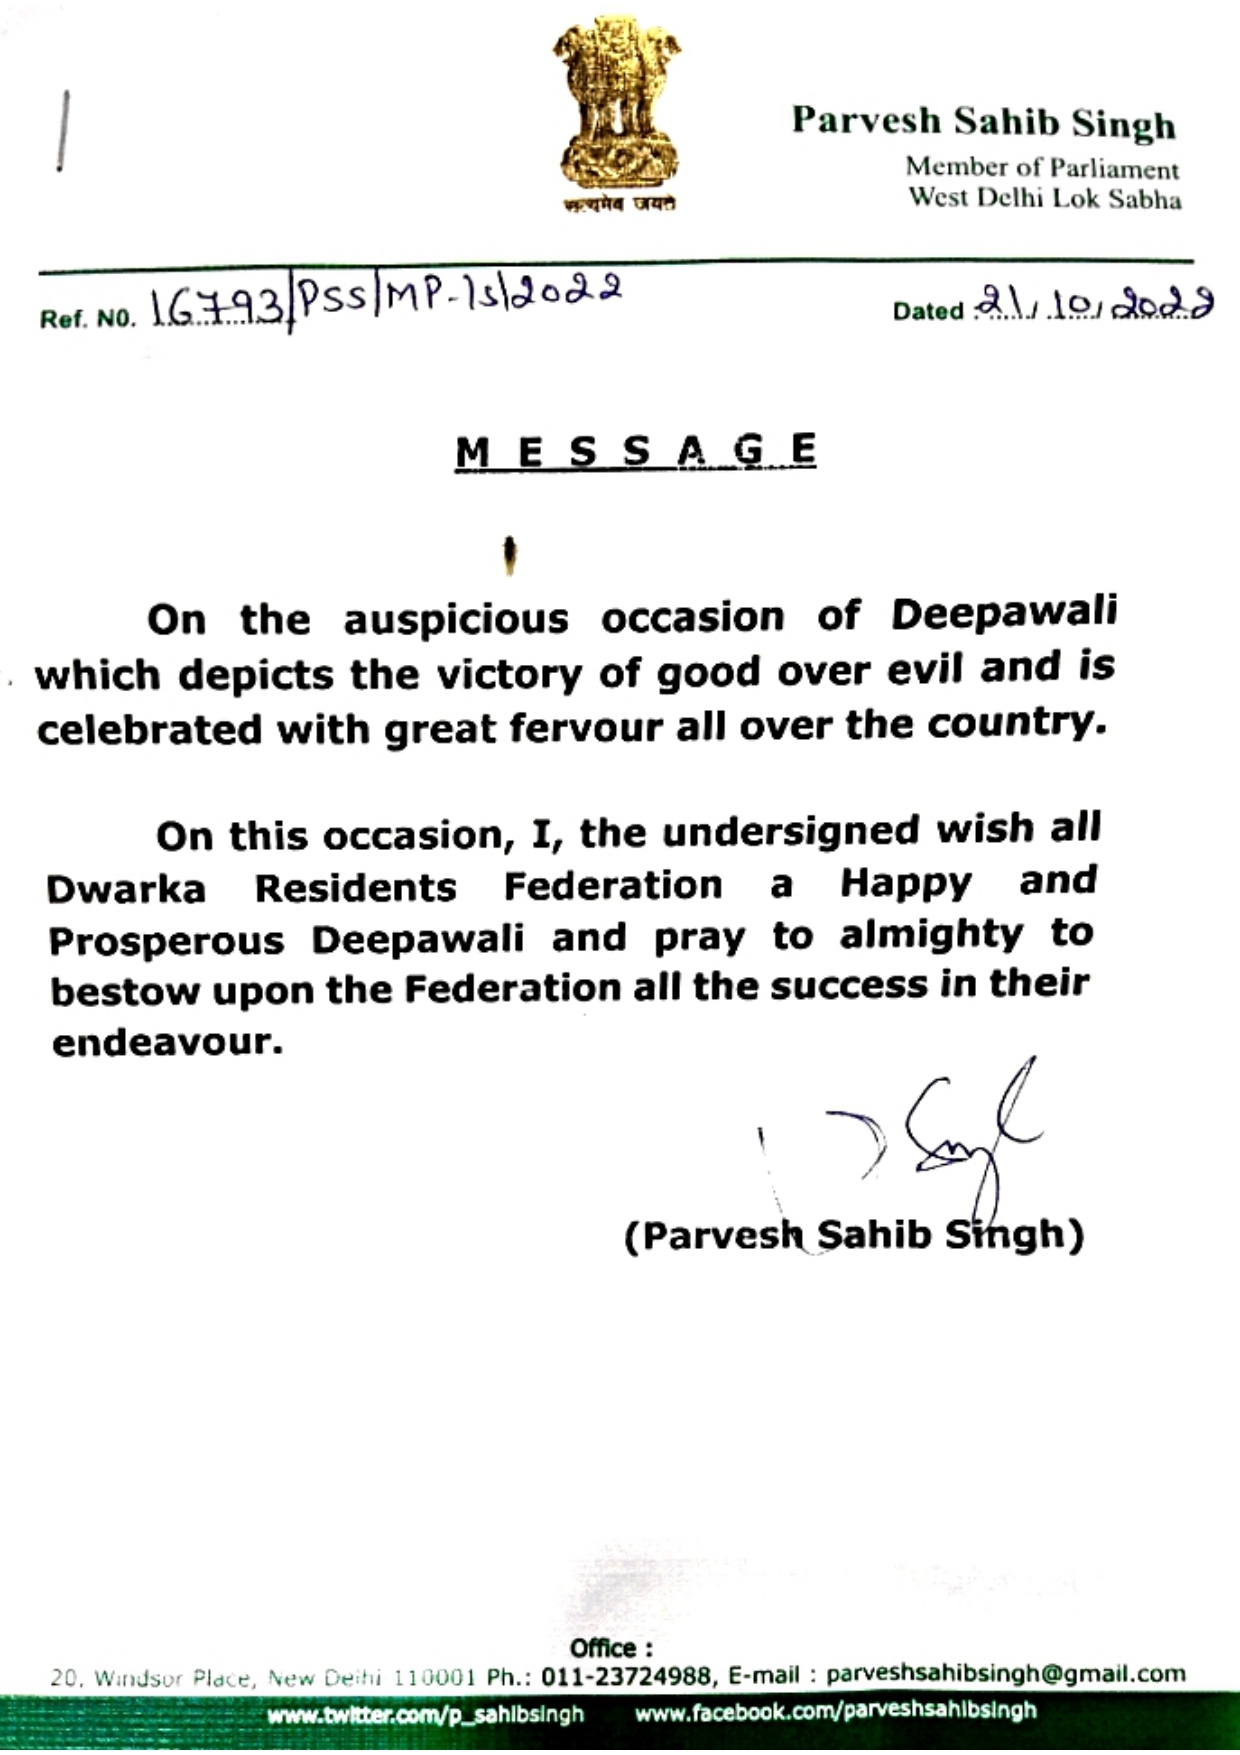 Appreciation and Best Wishes by Shri Parvesh Sahib Singh Ji (MP, West Delhi)